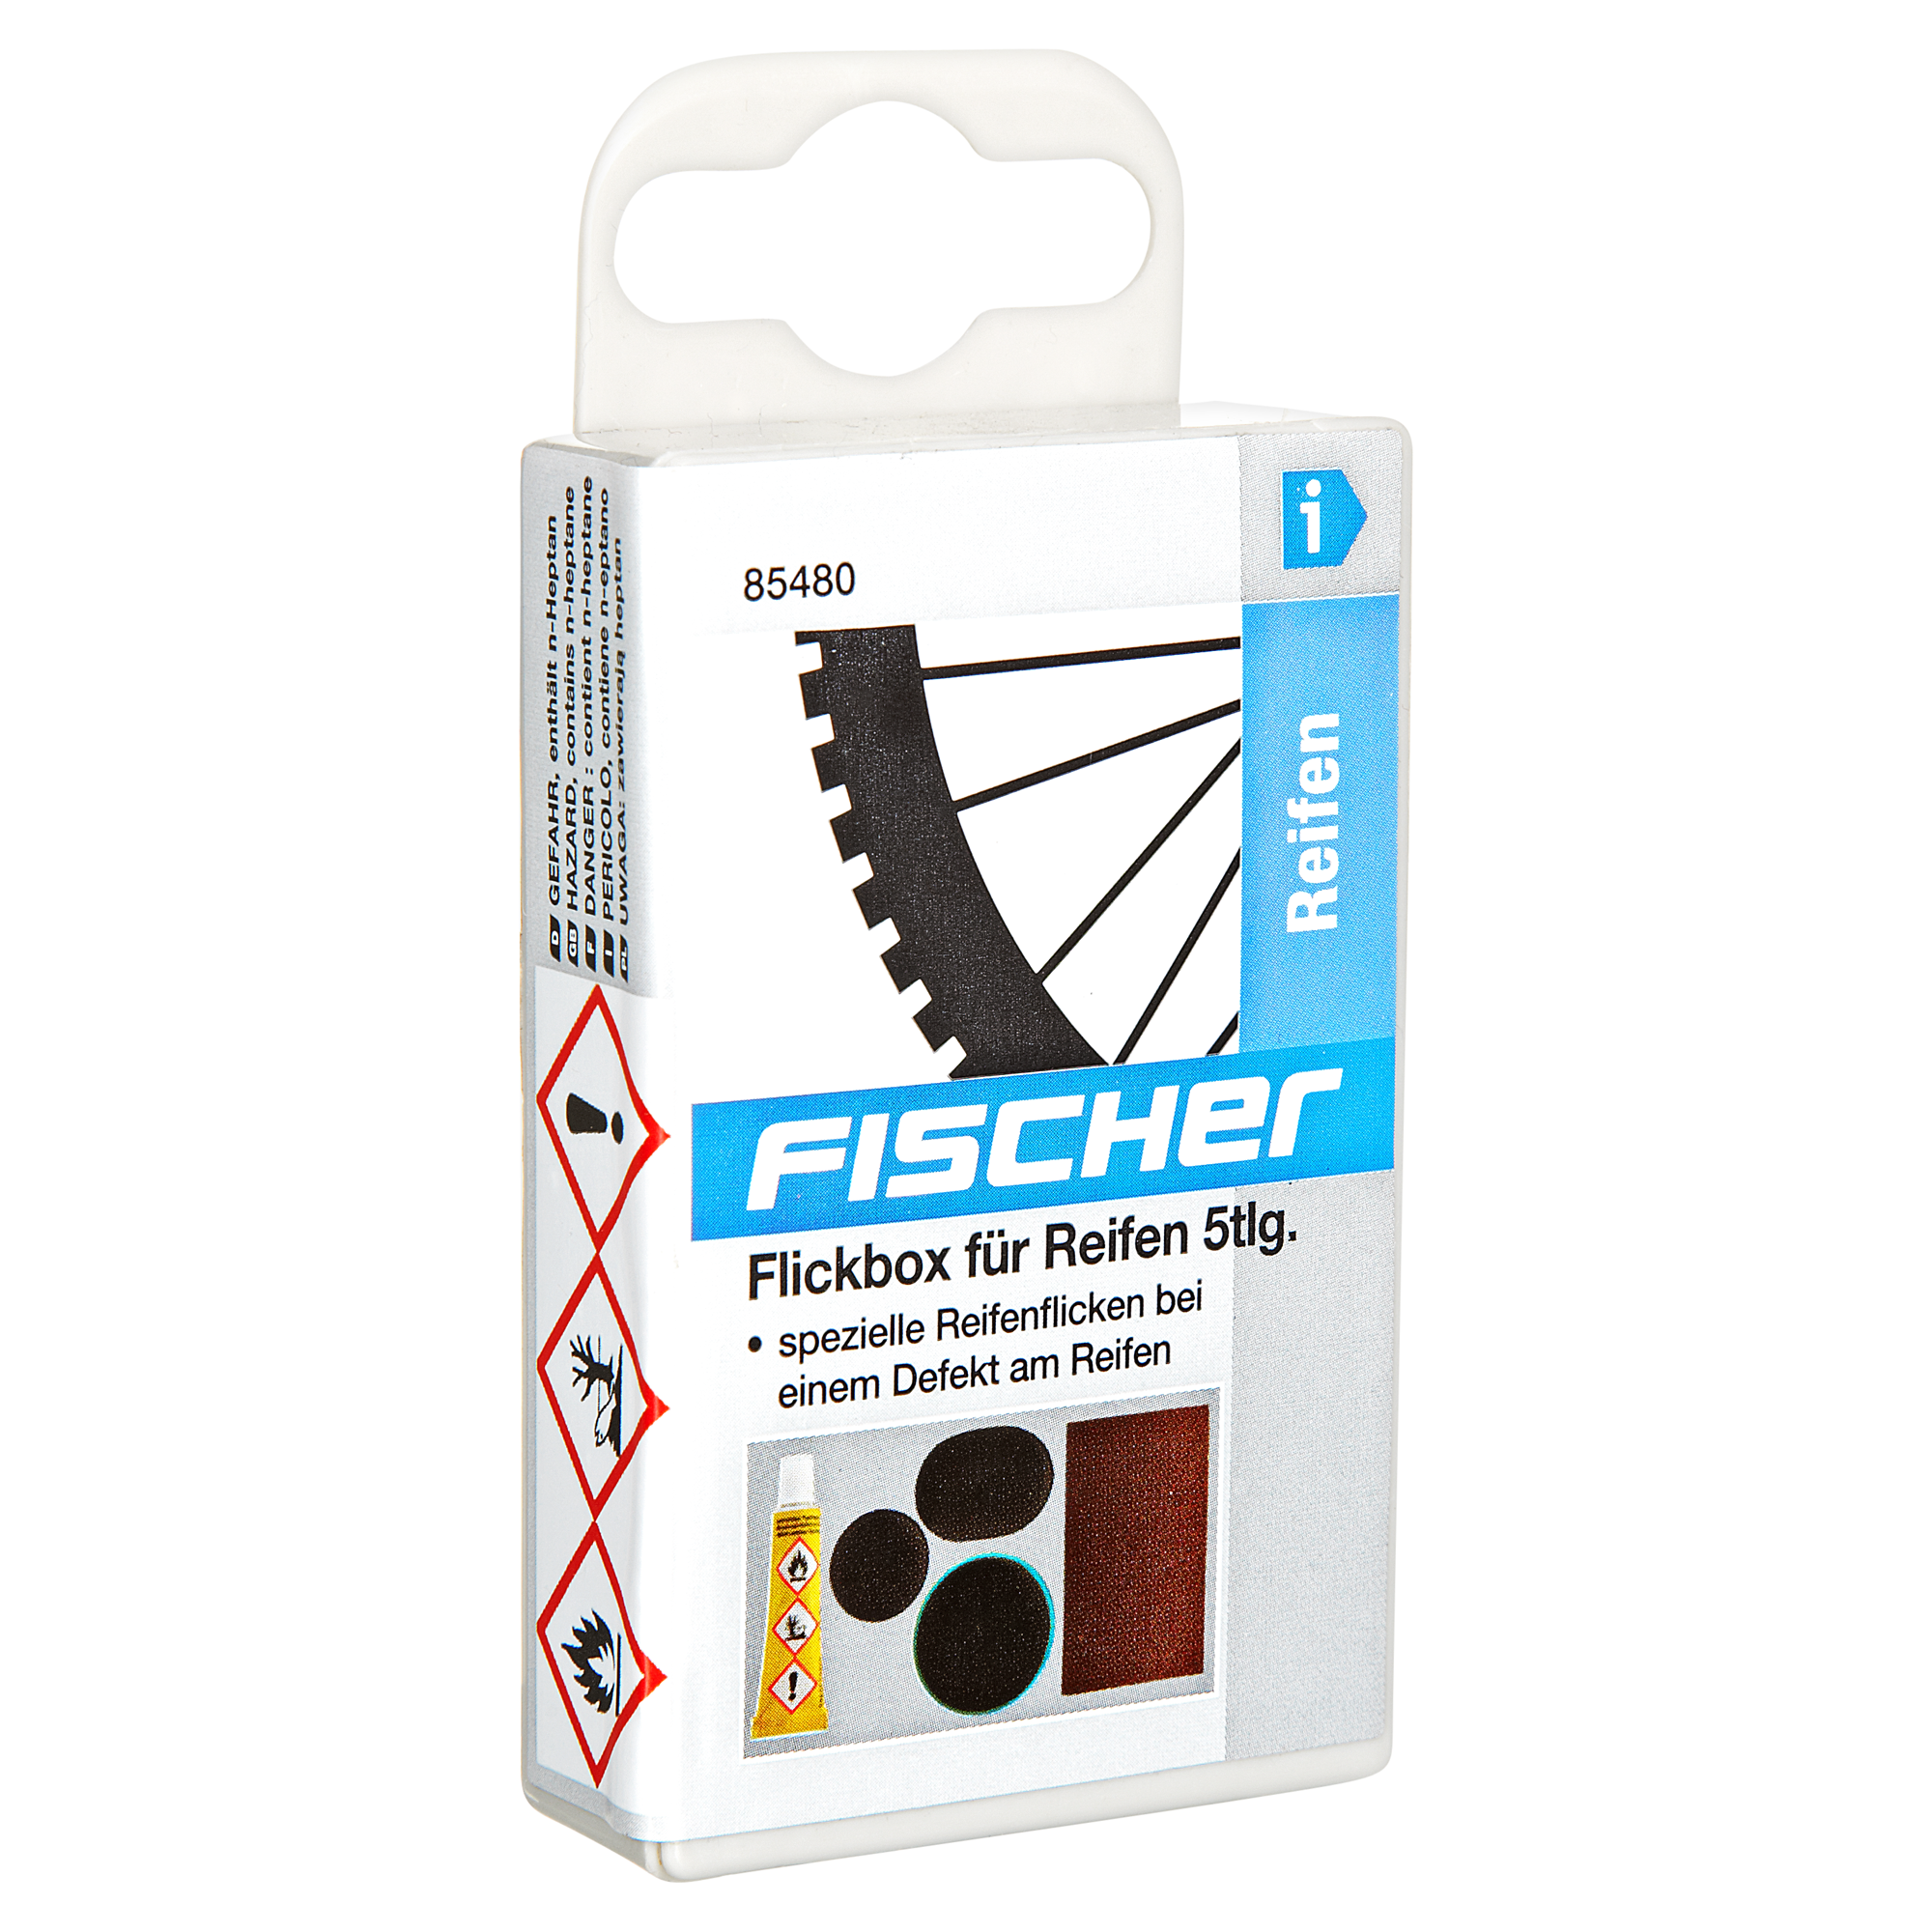 Fischer Flickbox für Fahrradreifen 5-tlg. + product picture